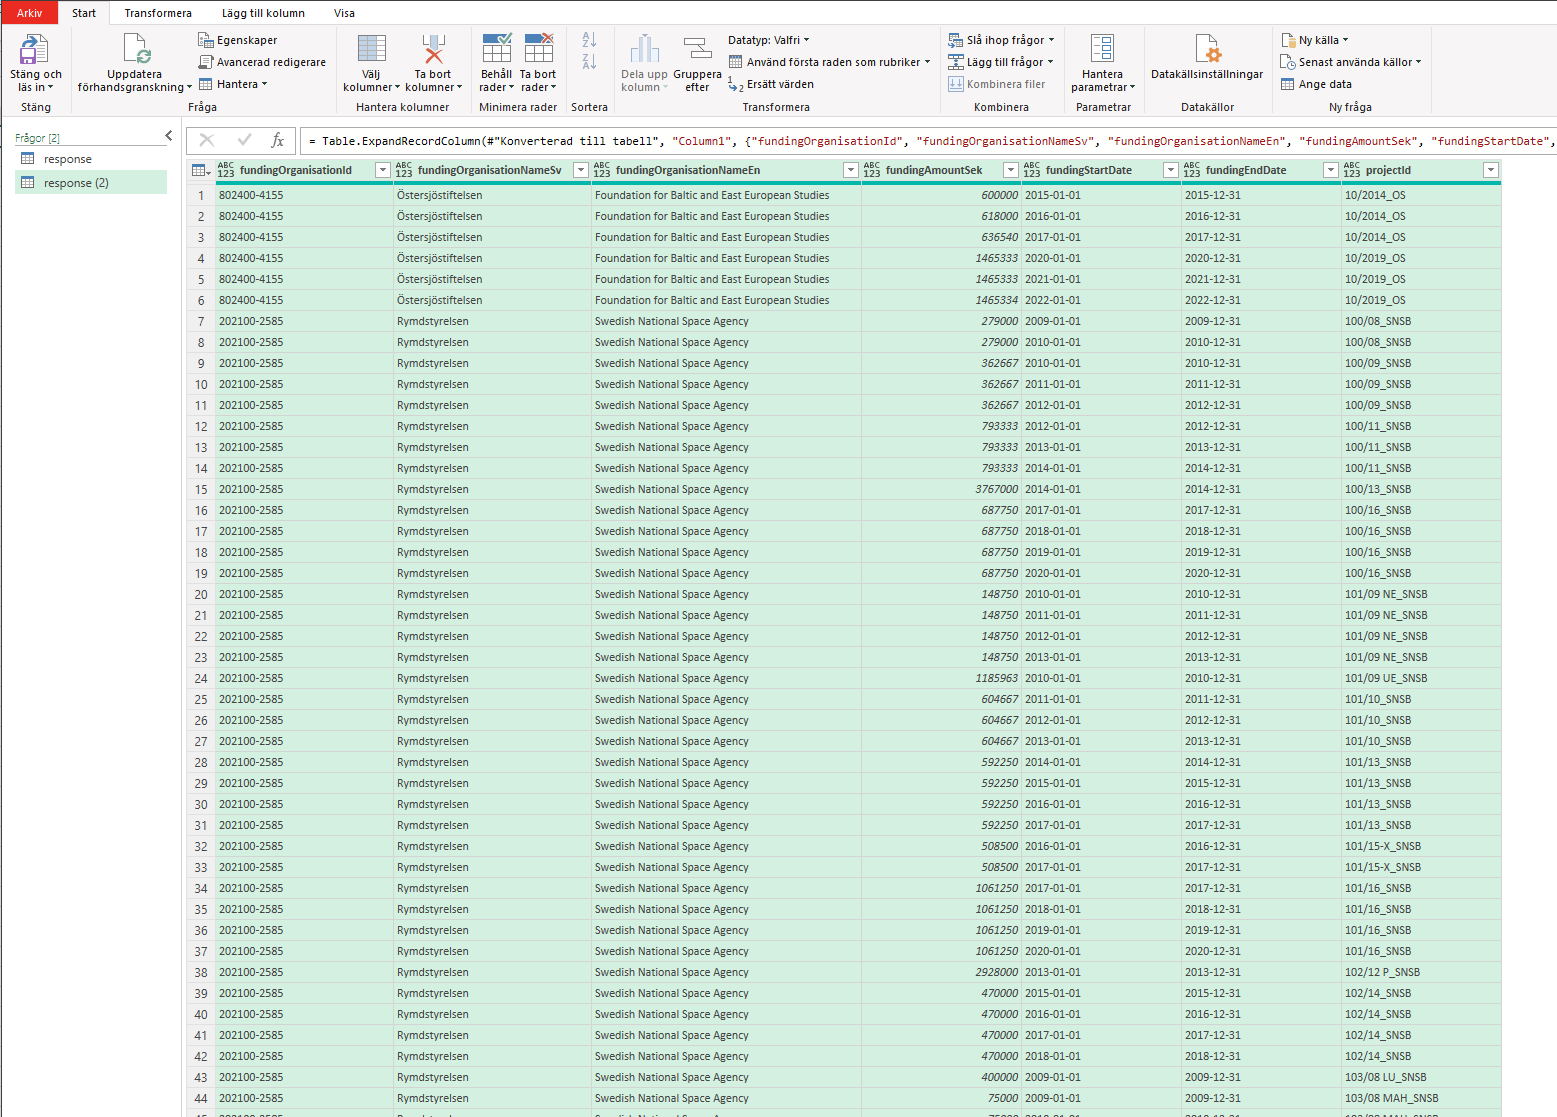 Skärmbild från Excel med data från Swecris API sorterad i kolumner